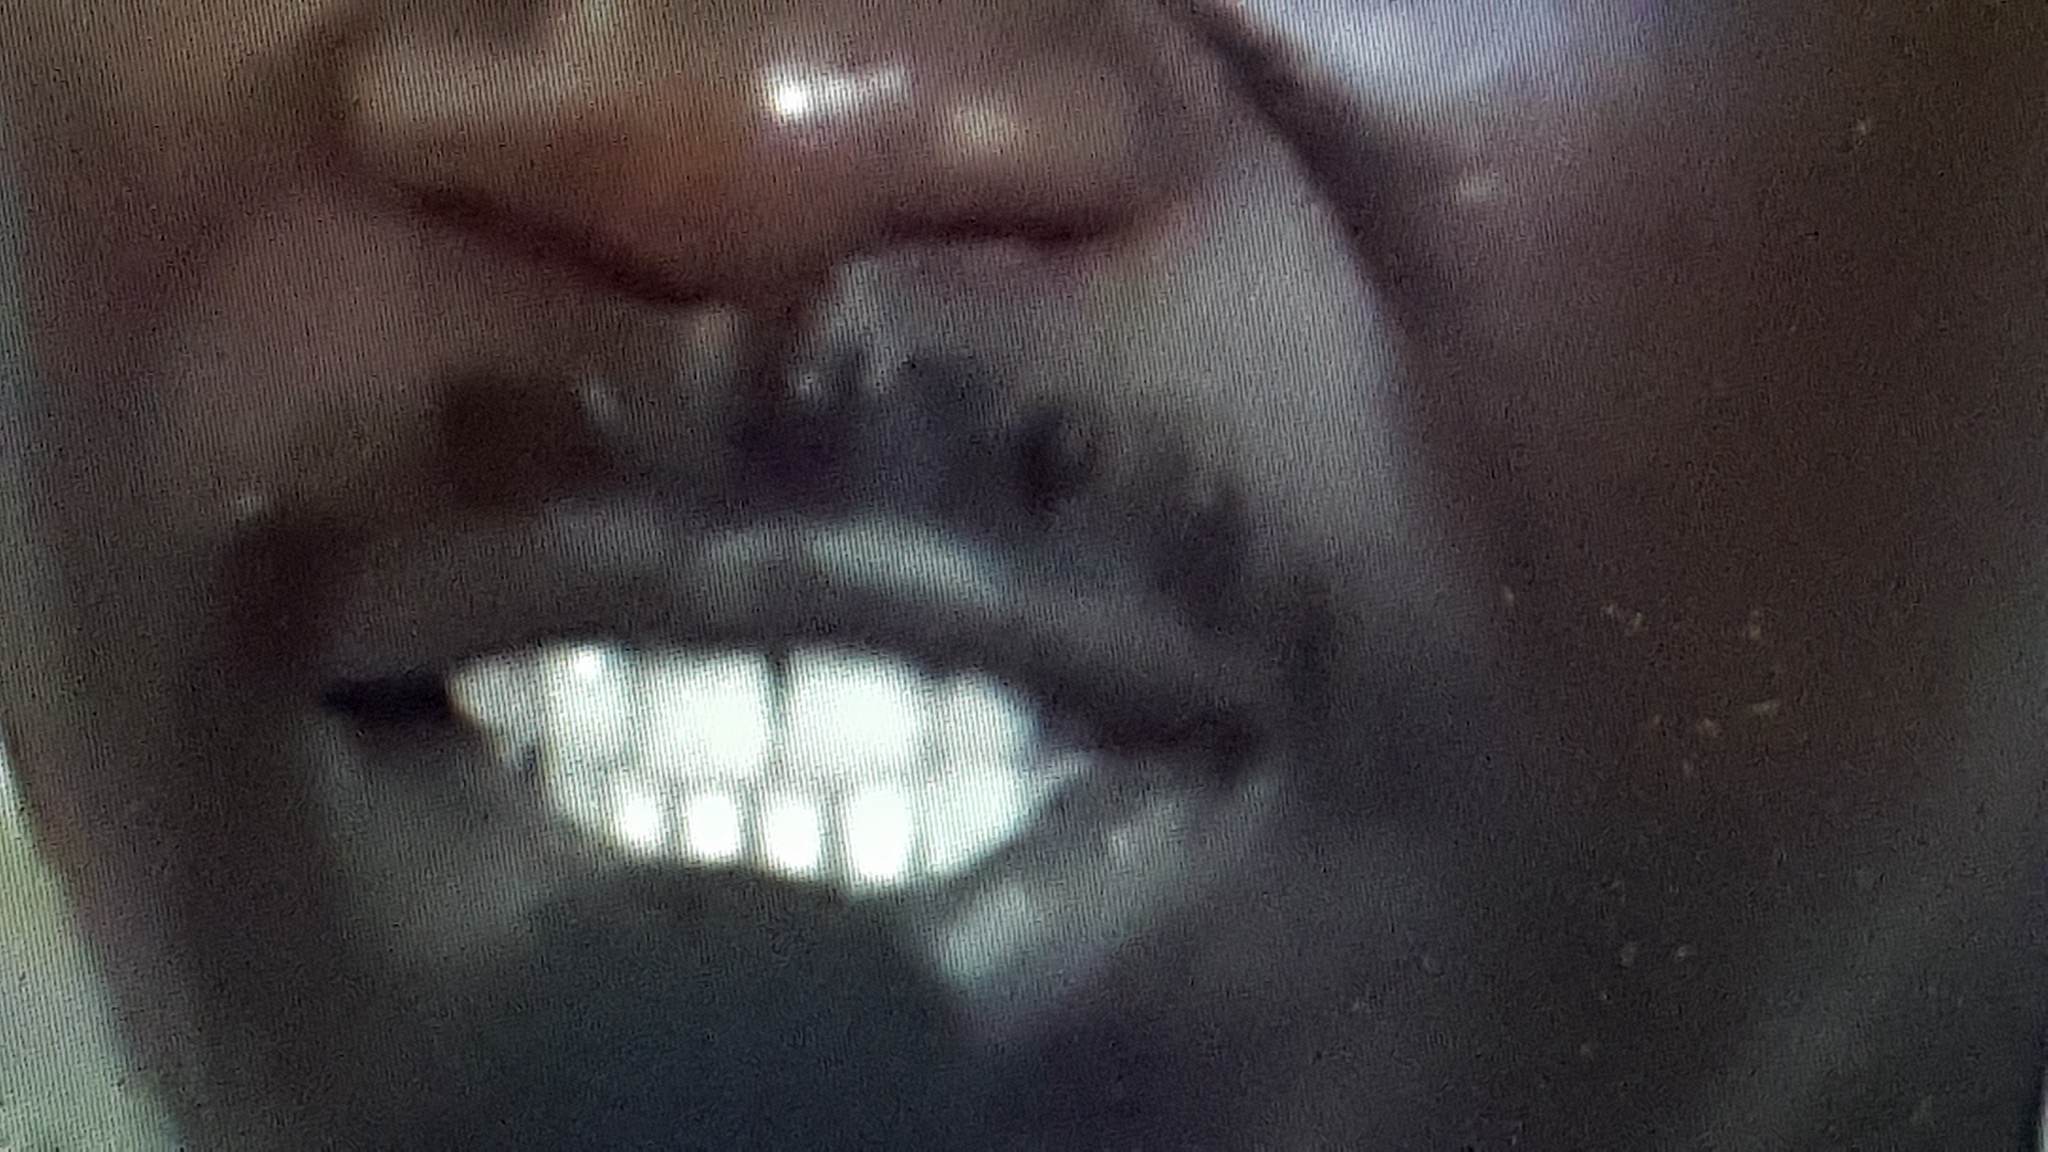 Arrêt sur image! Seydou Guèye et Mimi Touré recourent aux implants dentaires (la preuve par les images)